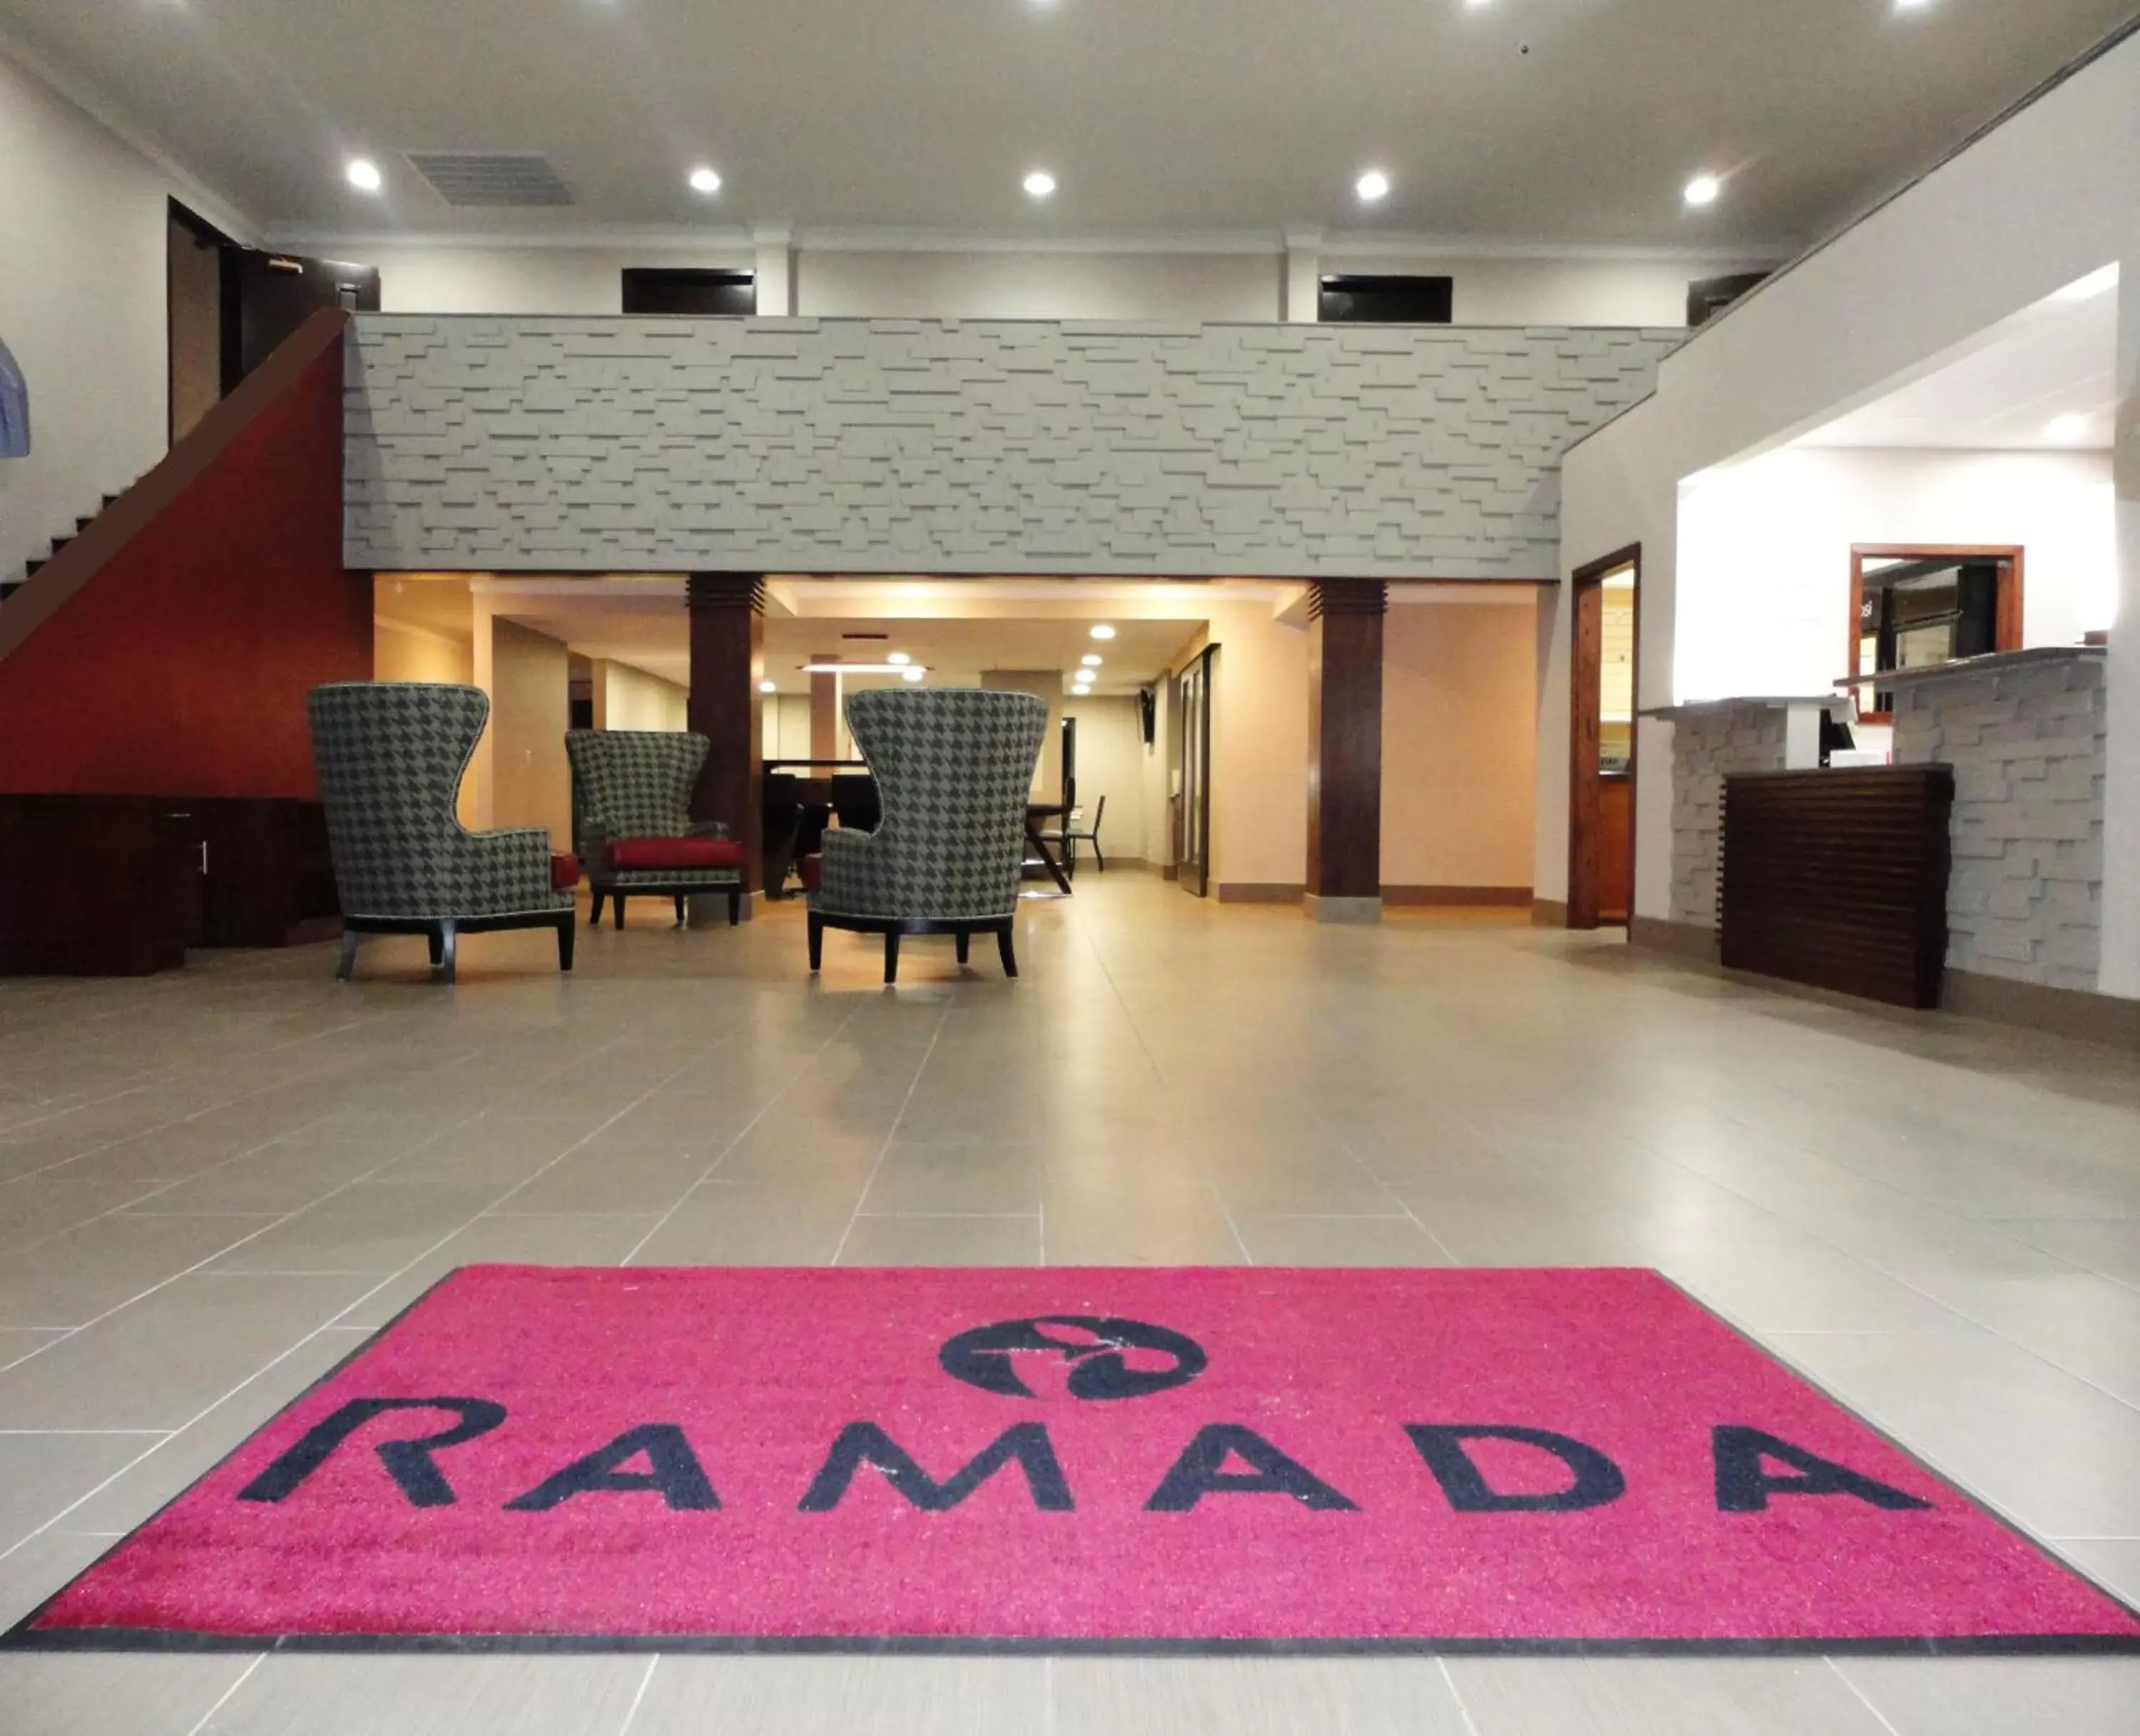 Lobby or reception, Lobby/Reception in Ramada by Wyndham Tuscaloosa